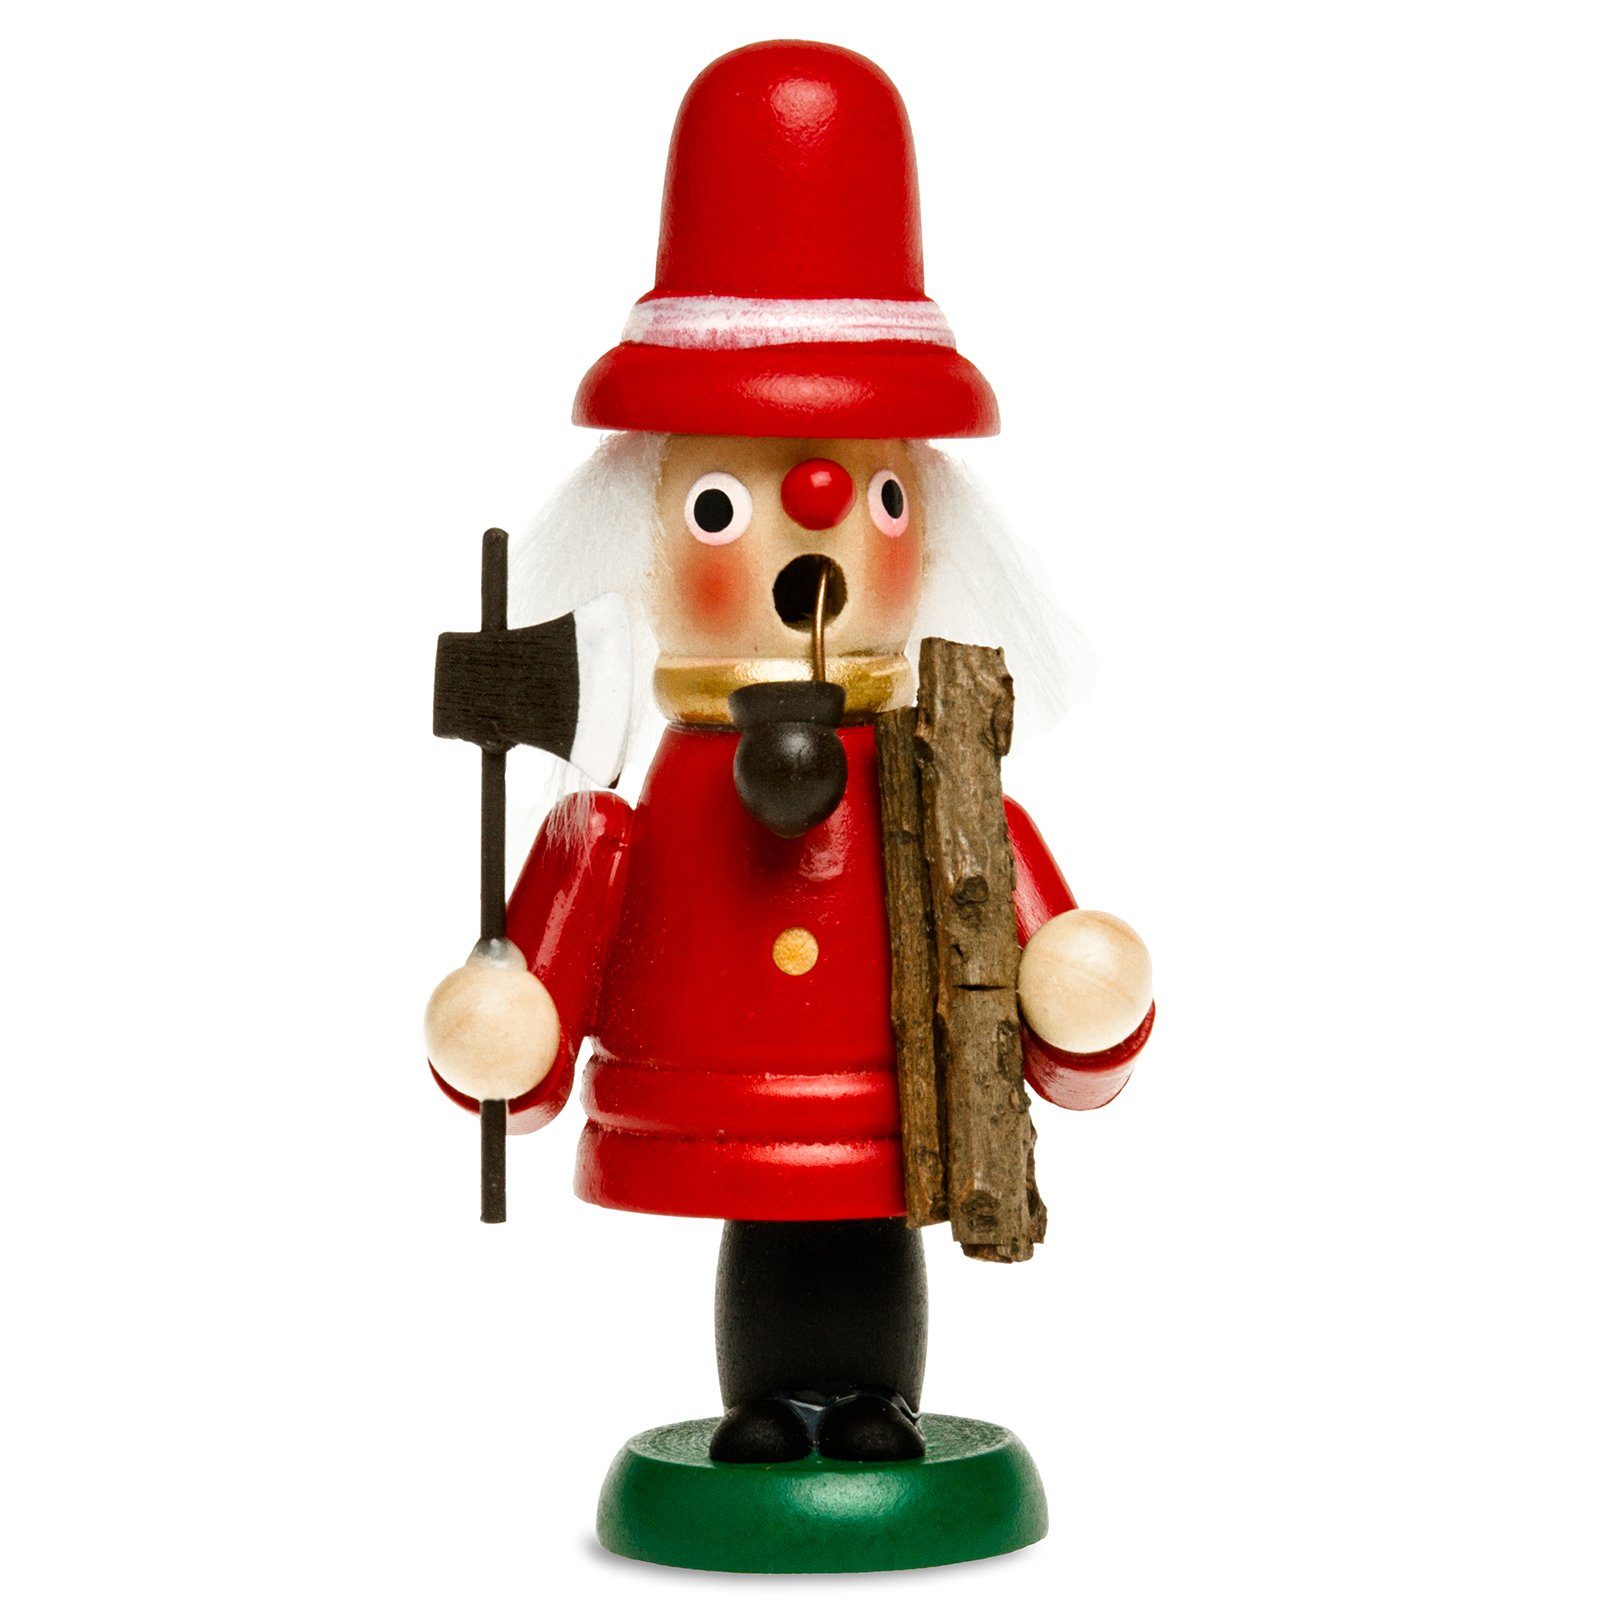 RM-G rot Räuchermännchen SIKORA Holzfäller aus G5 Weihnachtsfigur SIKORA Holz Mini